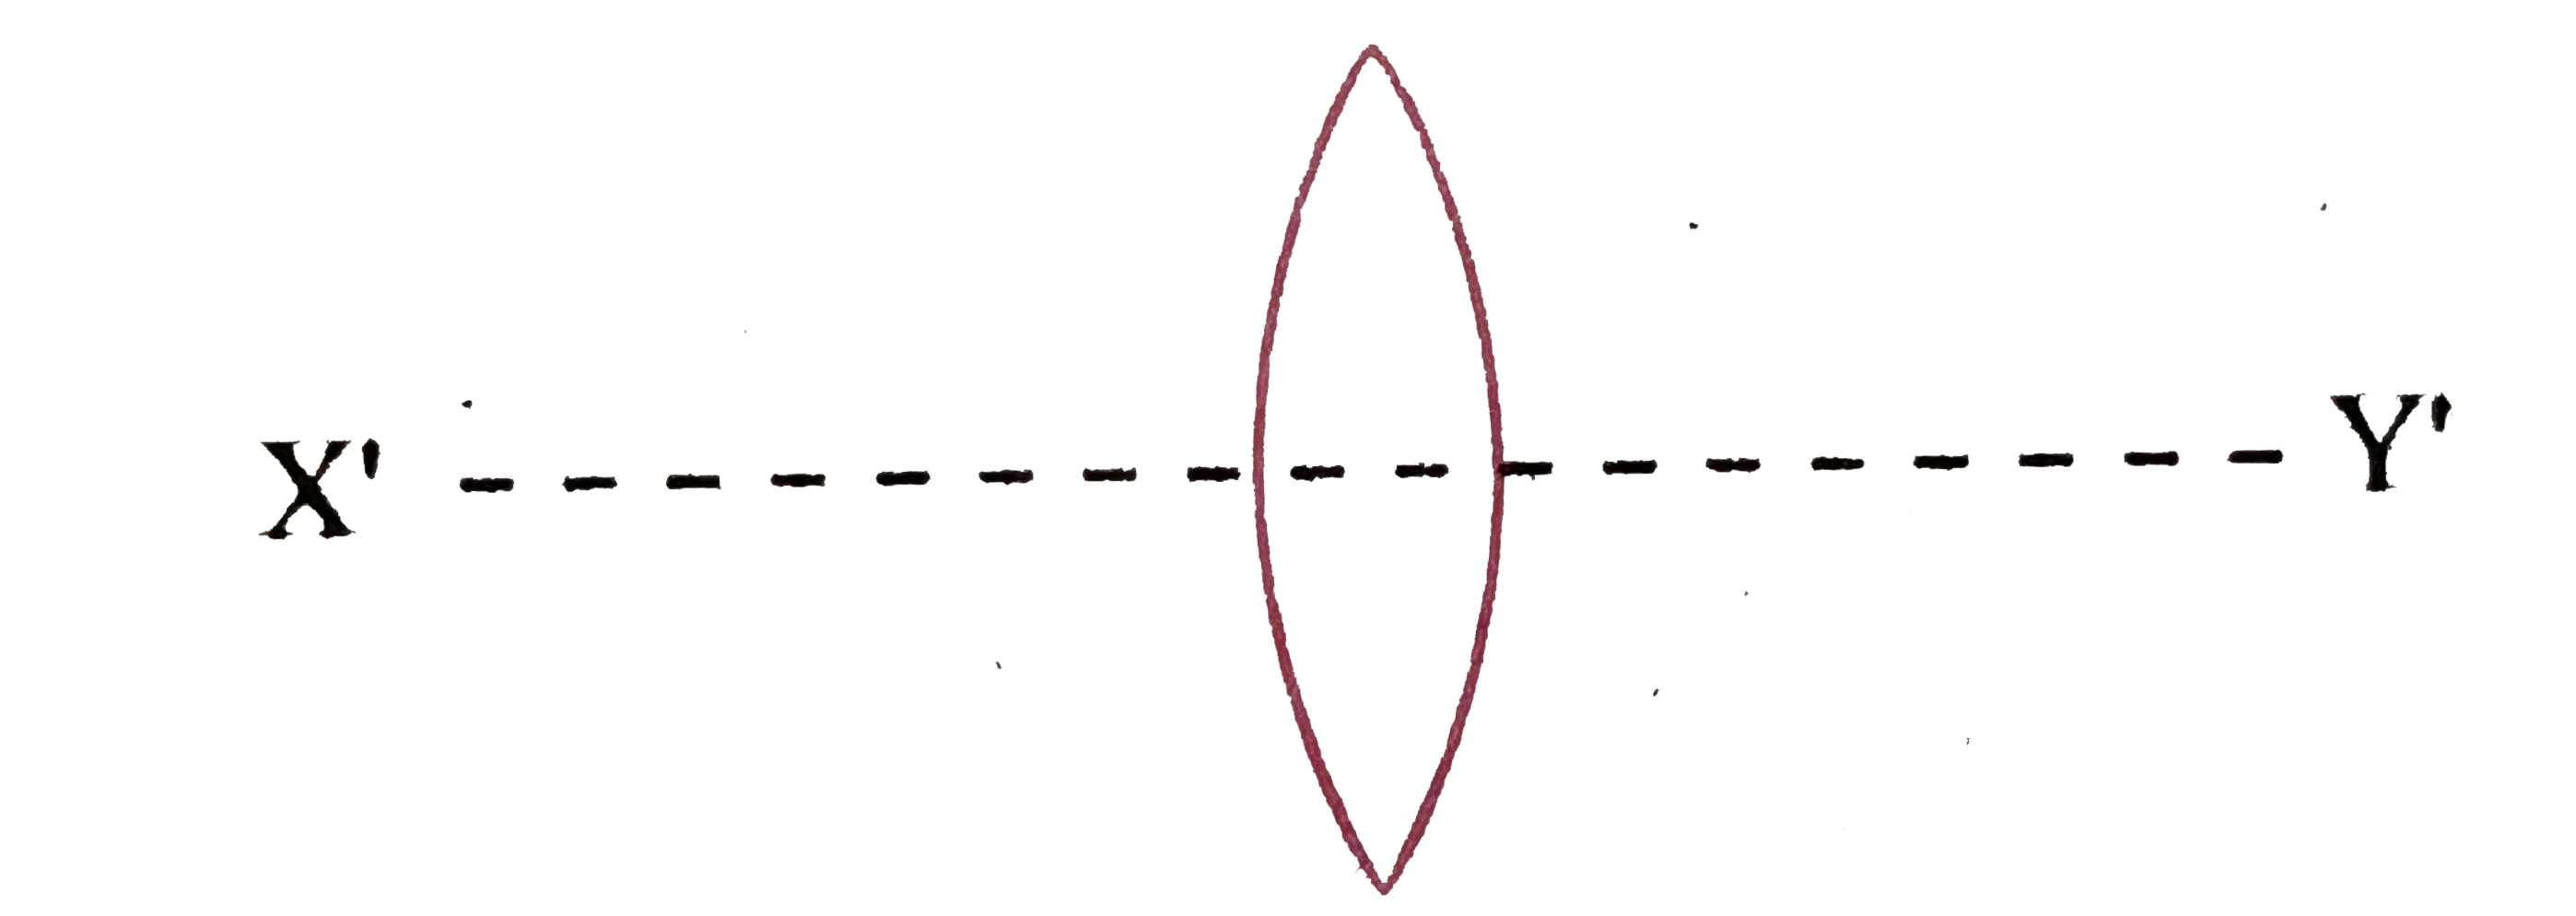 यदि उपर्युक्त प्रश्न में लेंस को संलग्न चित्रानुसार X'Y' तल द्वारा दो भागों में बाँट दिया जाये तो प्रत्येक भाग की फोकस दूरी क्या होगी?